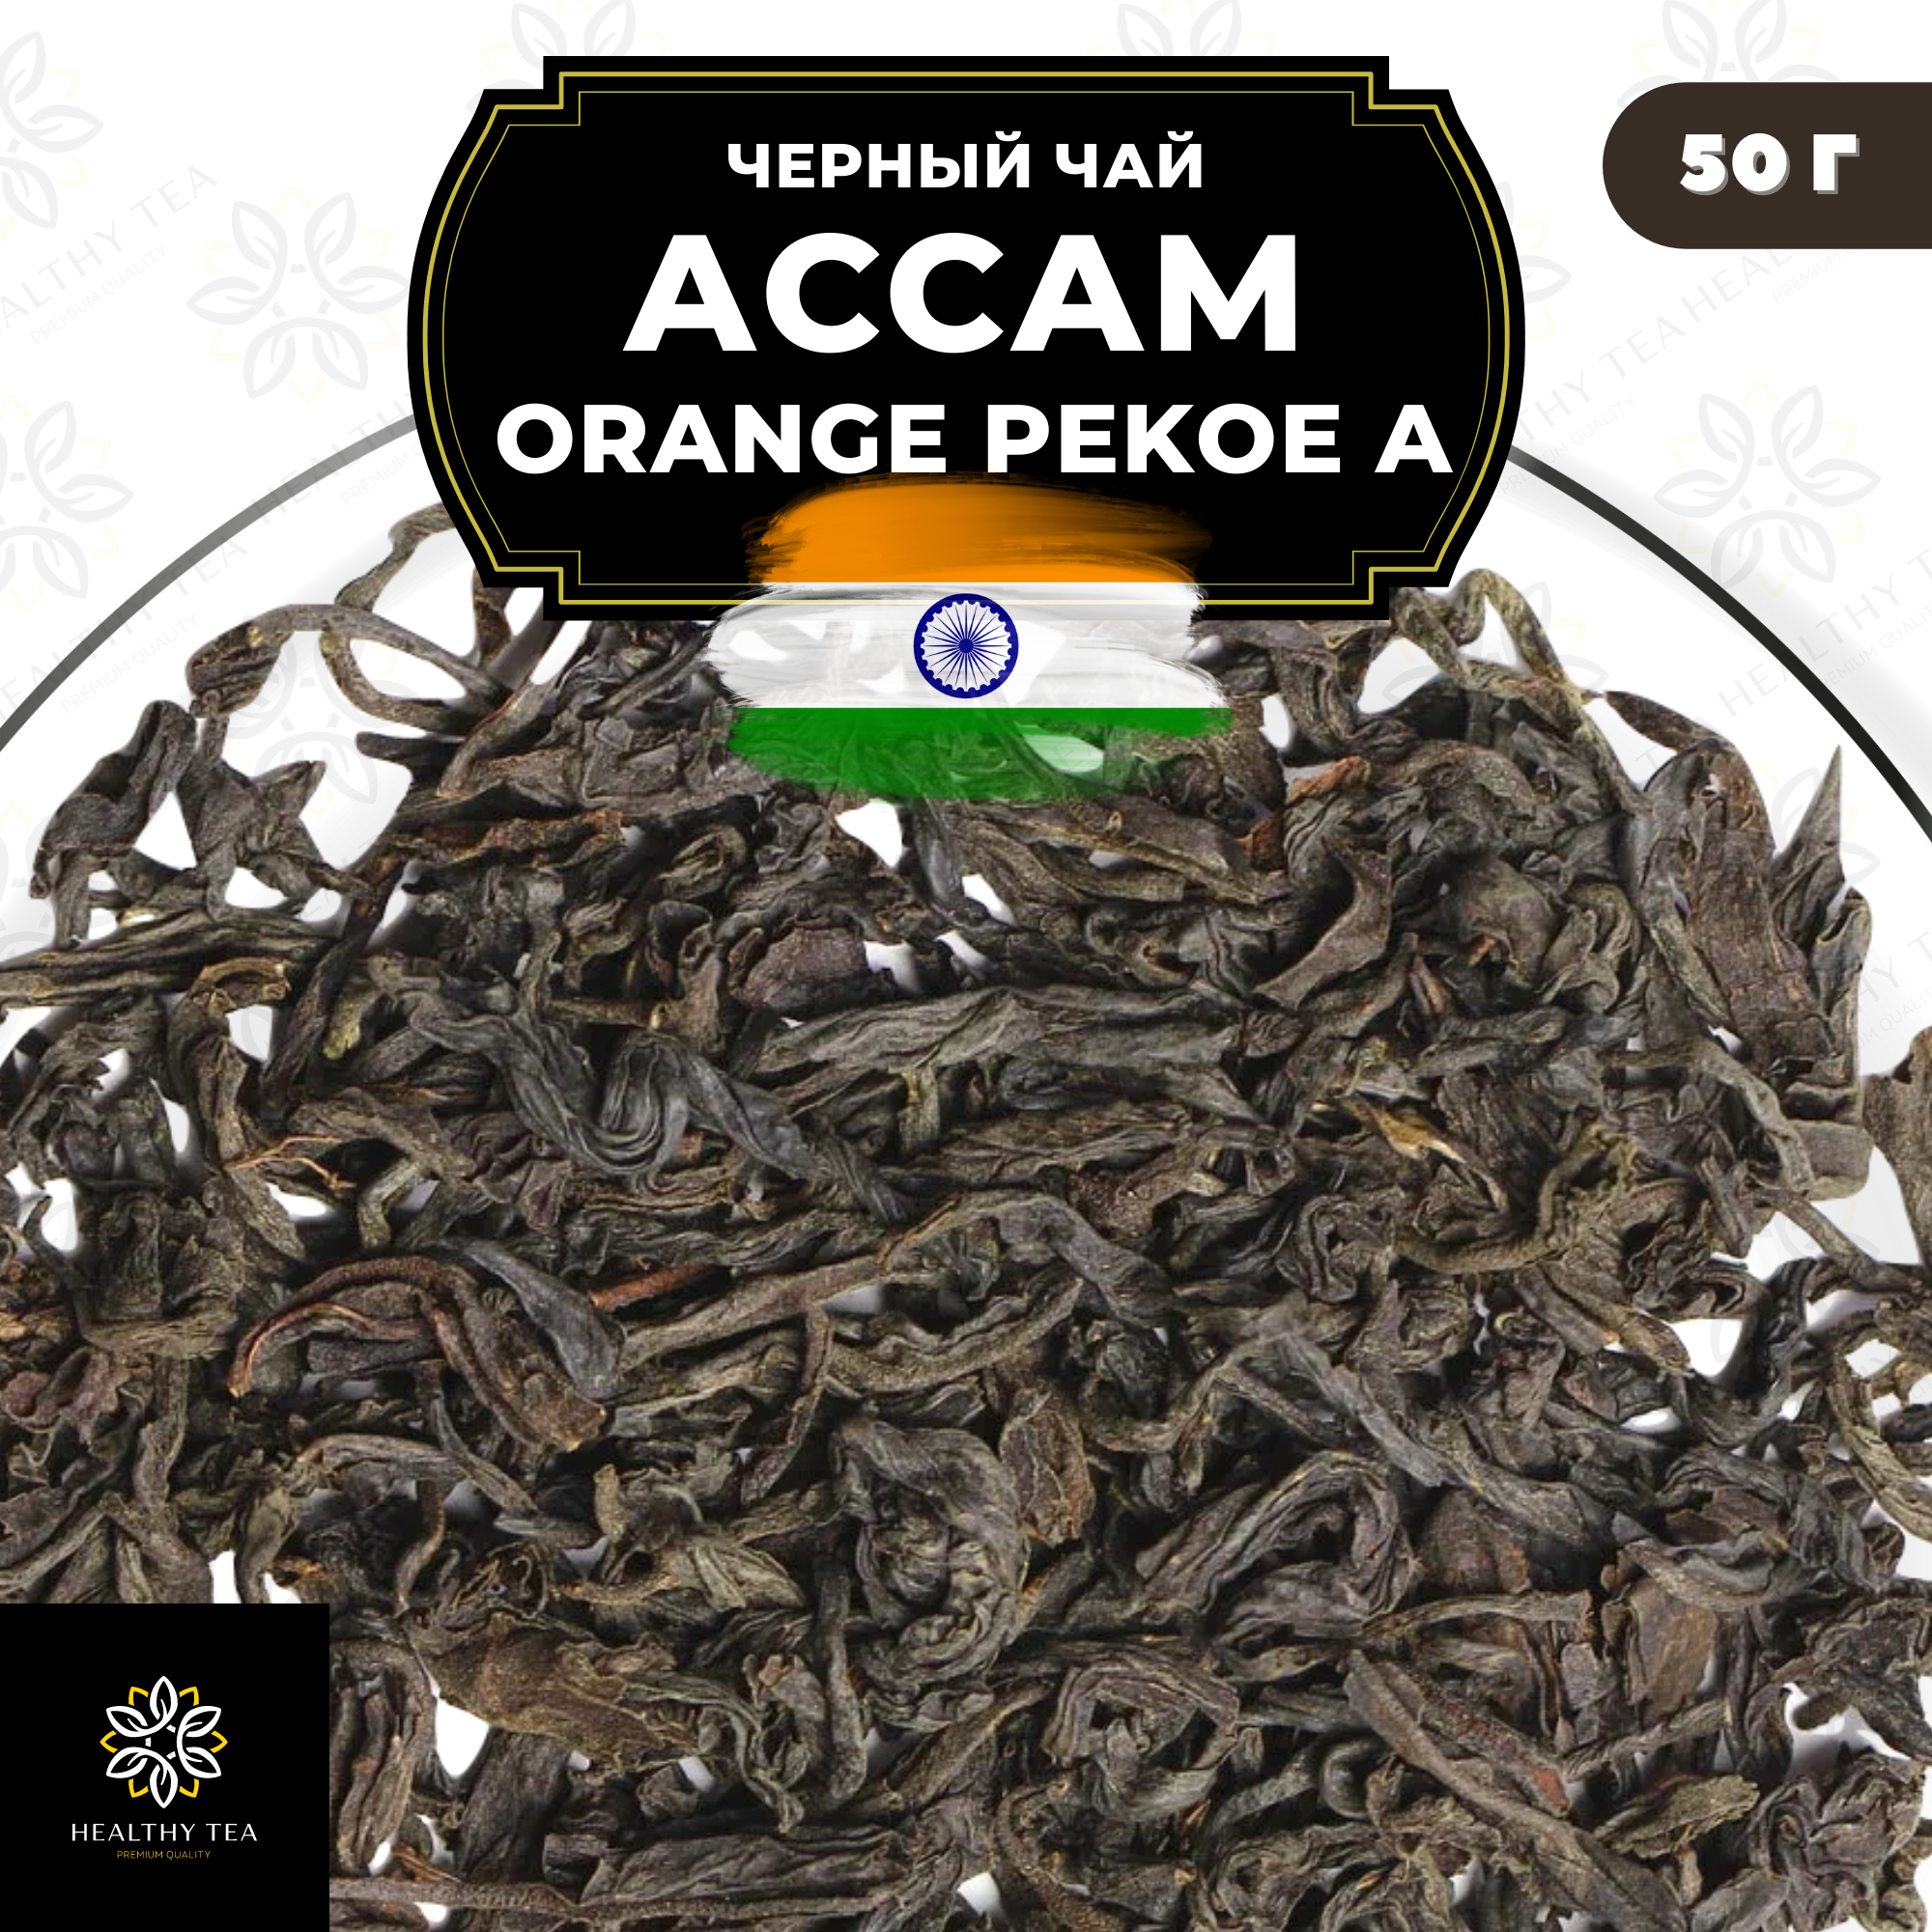 Индийский Черный крупнолистовой чай Ассам Orange Pekoe категории А (OPA) Полезный чай / HEALTHY TEA, 50 гр